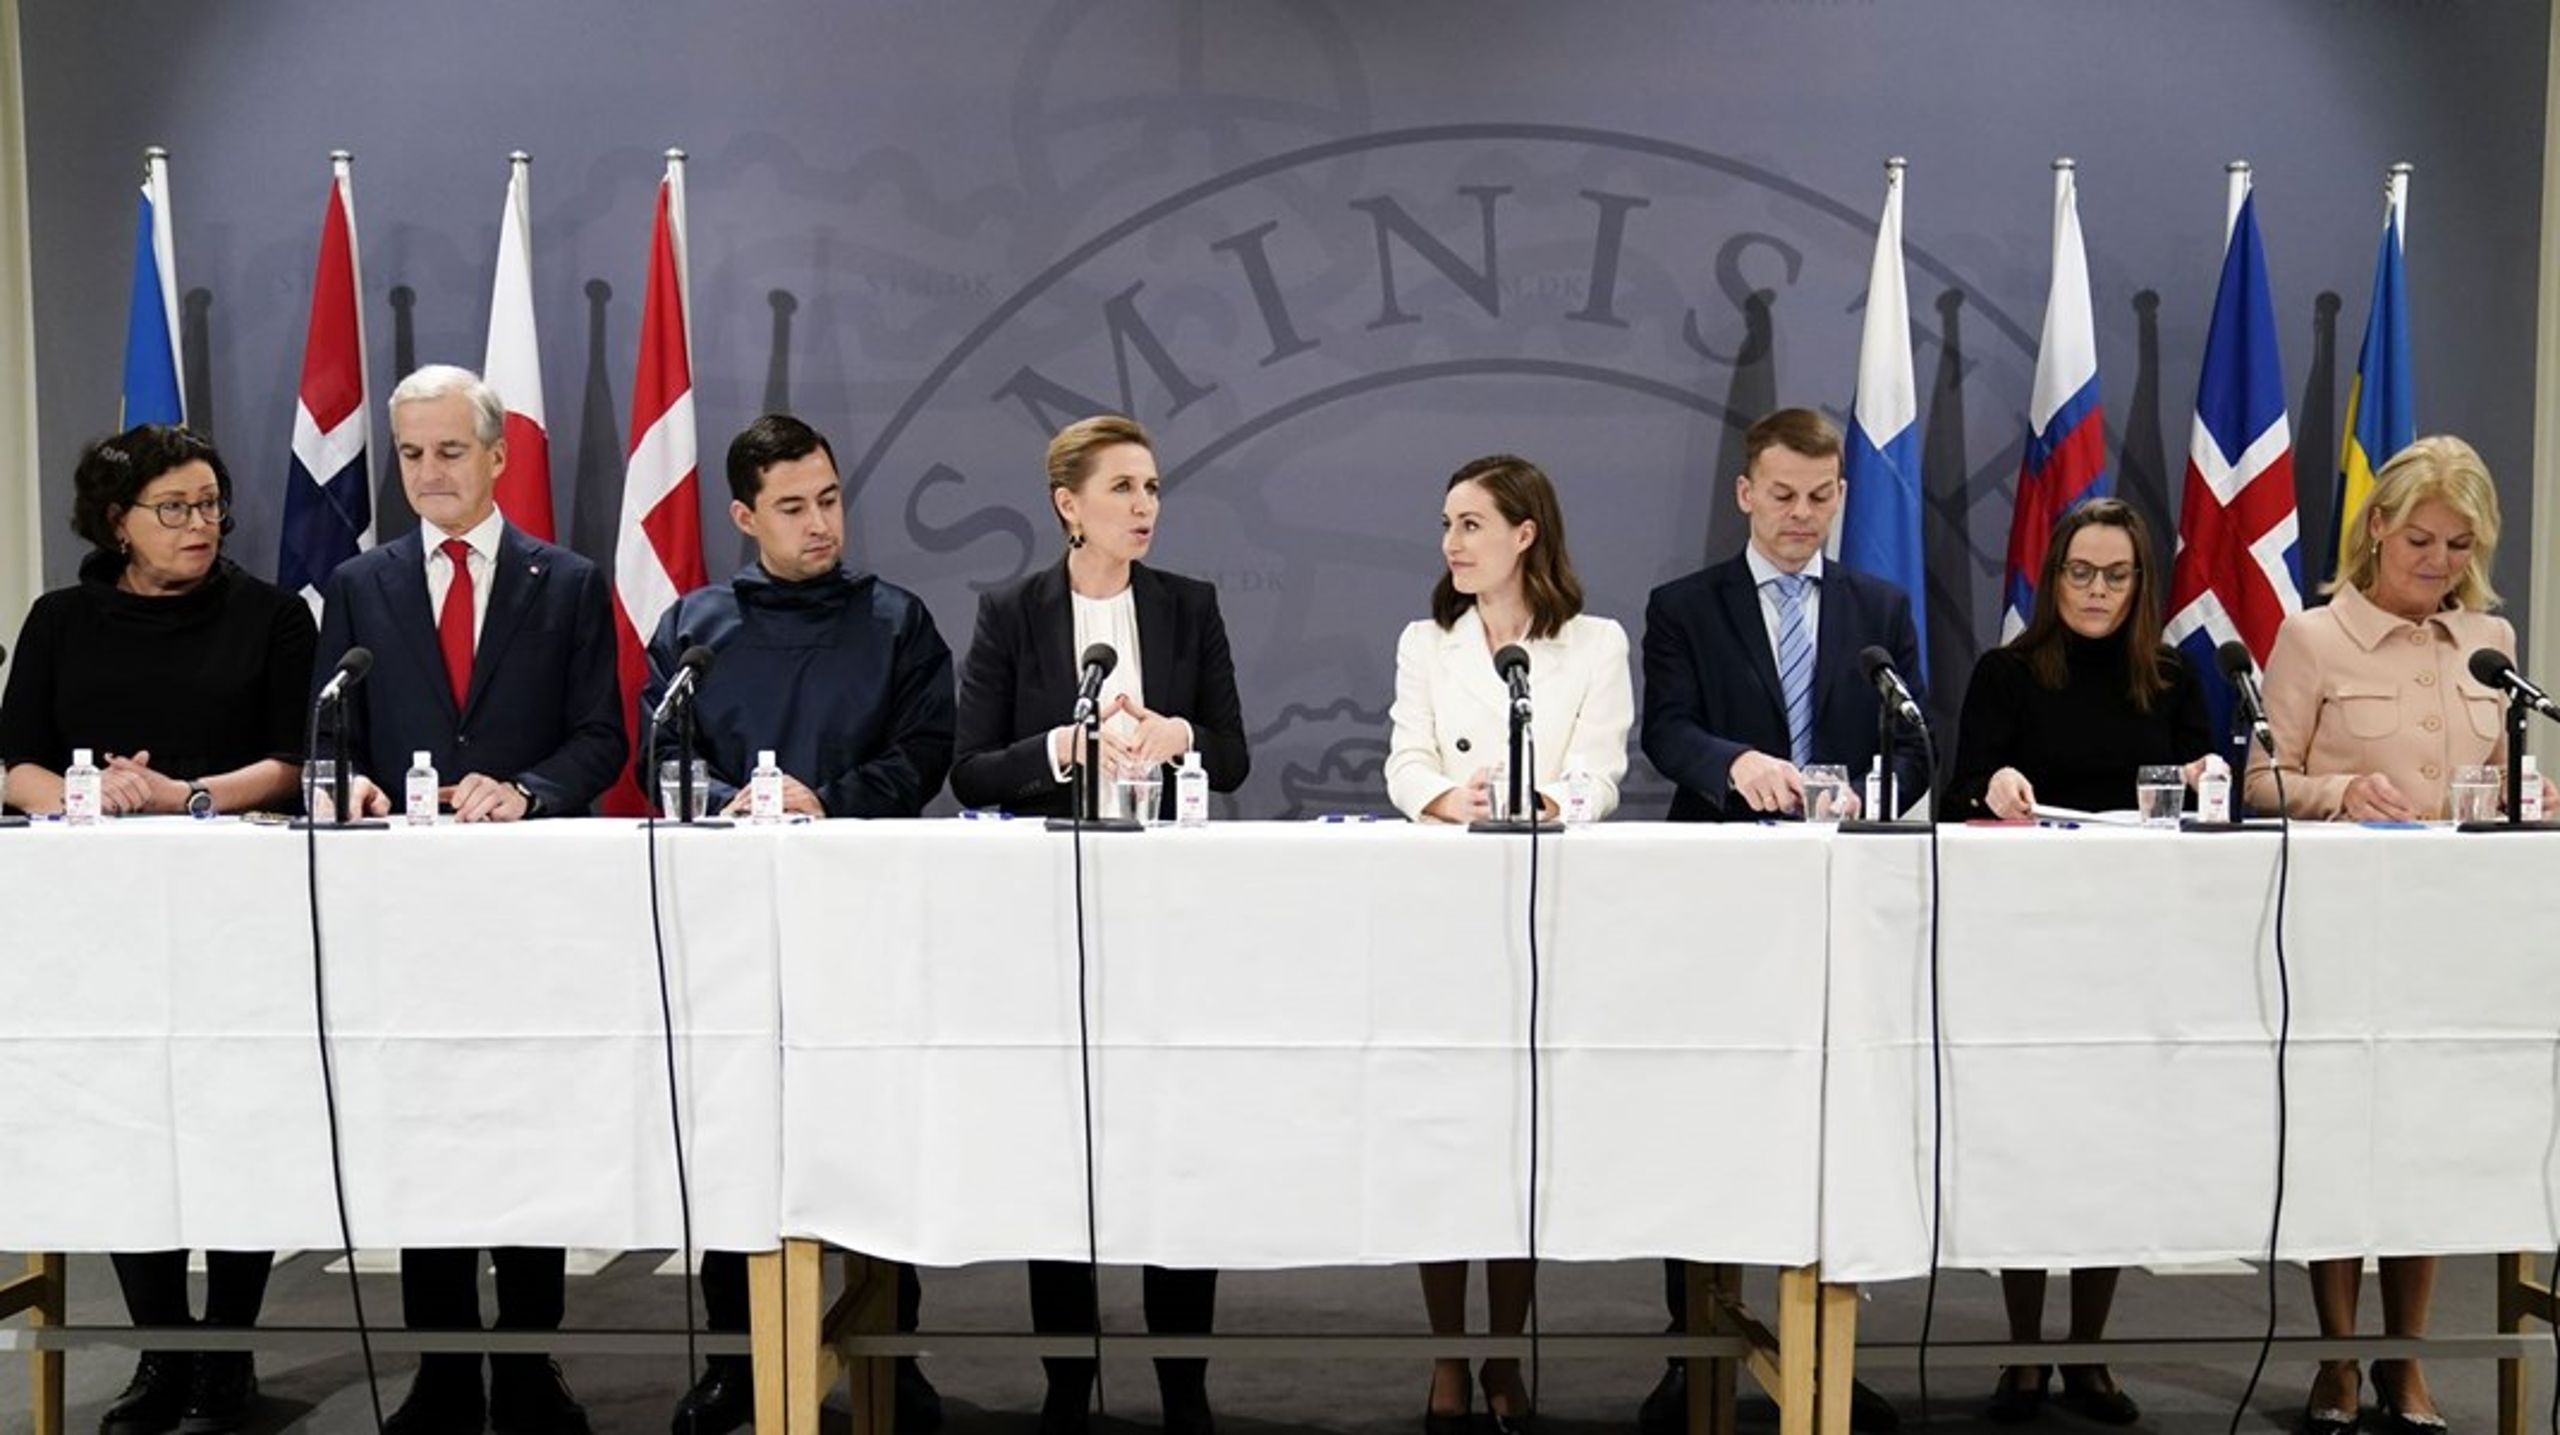 Denne uken er stortingspolitikerne opptatt med andre ting enn stortingsmøter, som for eksempel Nordisk råd. Bildet er fra møtet i Nordisk råd i København i 2021.